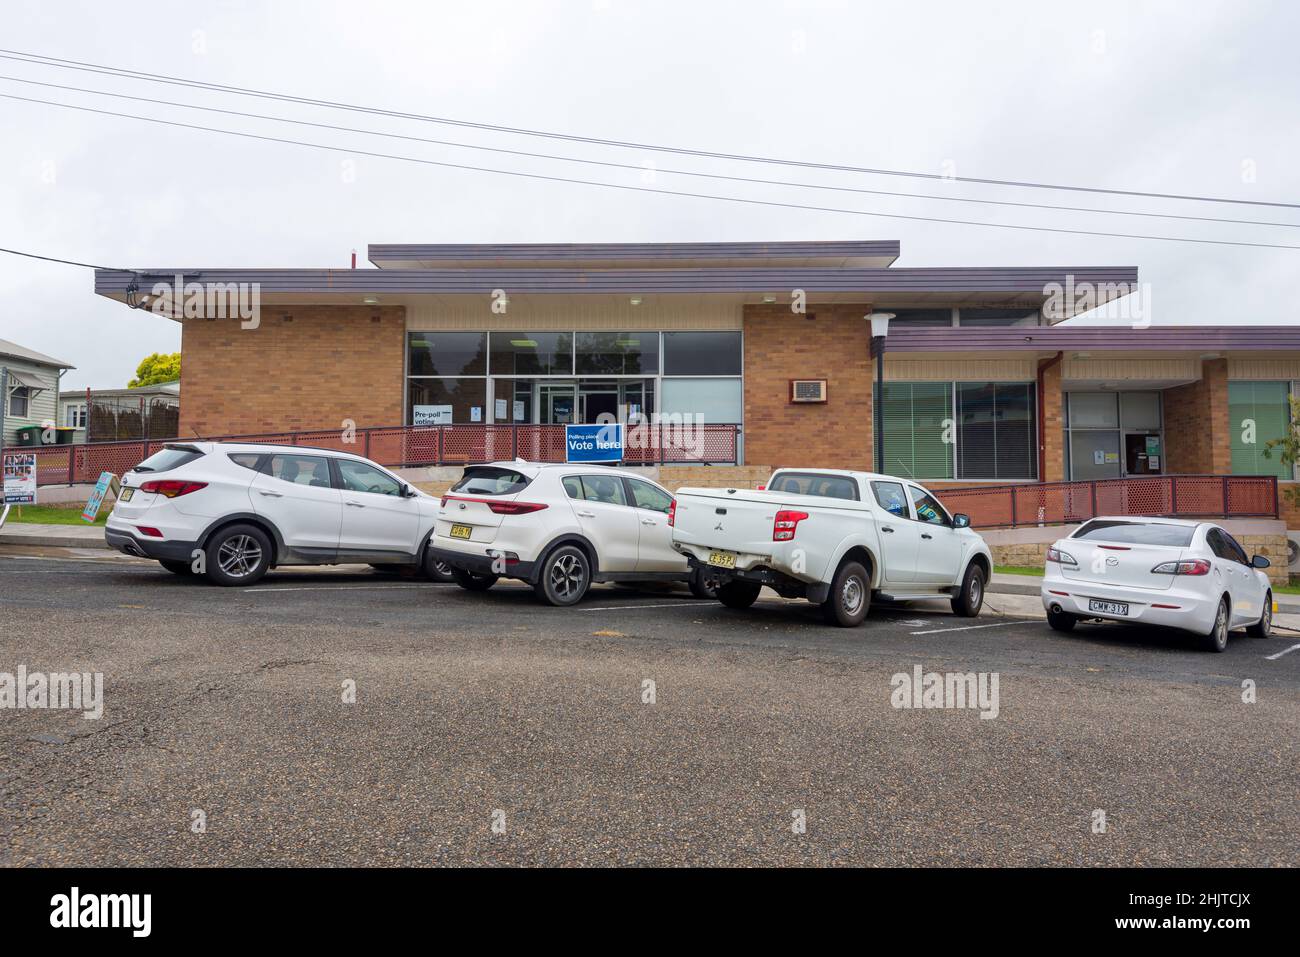 Une rangée de voitures blanches est garée à l'extérieur du bâtiment moderne du conseil local du milieu du siècle à Gloucester, Nouvelle-Galles du Sud, en Australie Banque D'Images